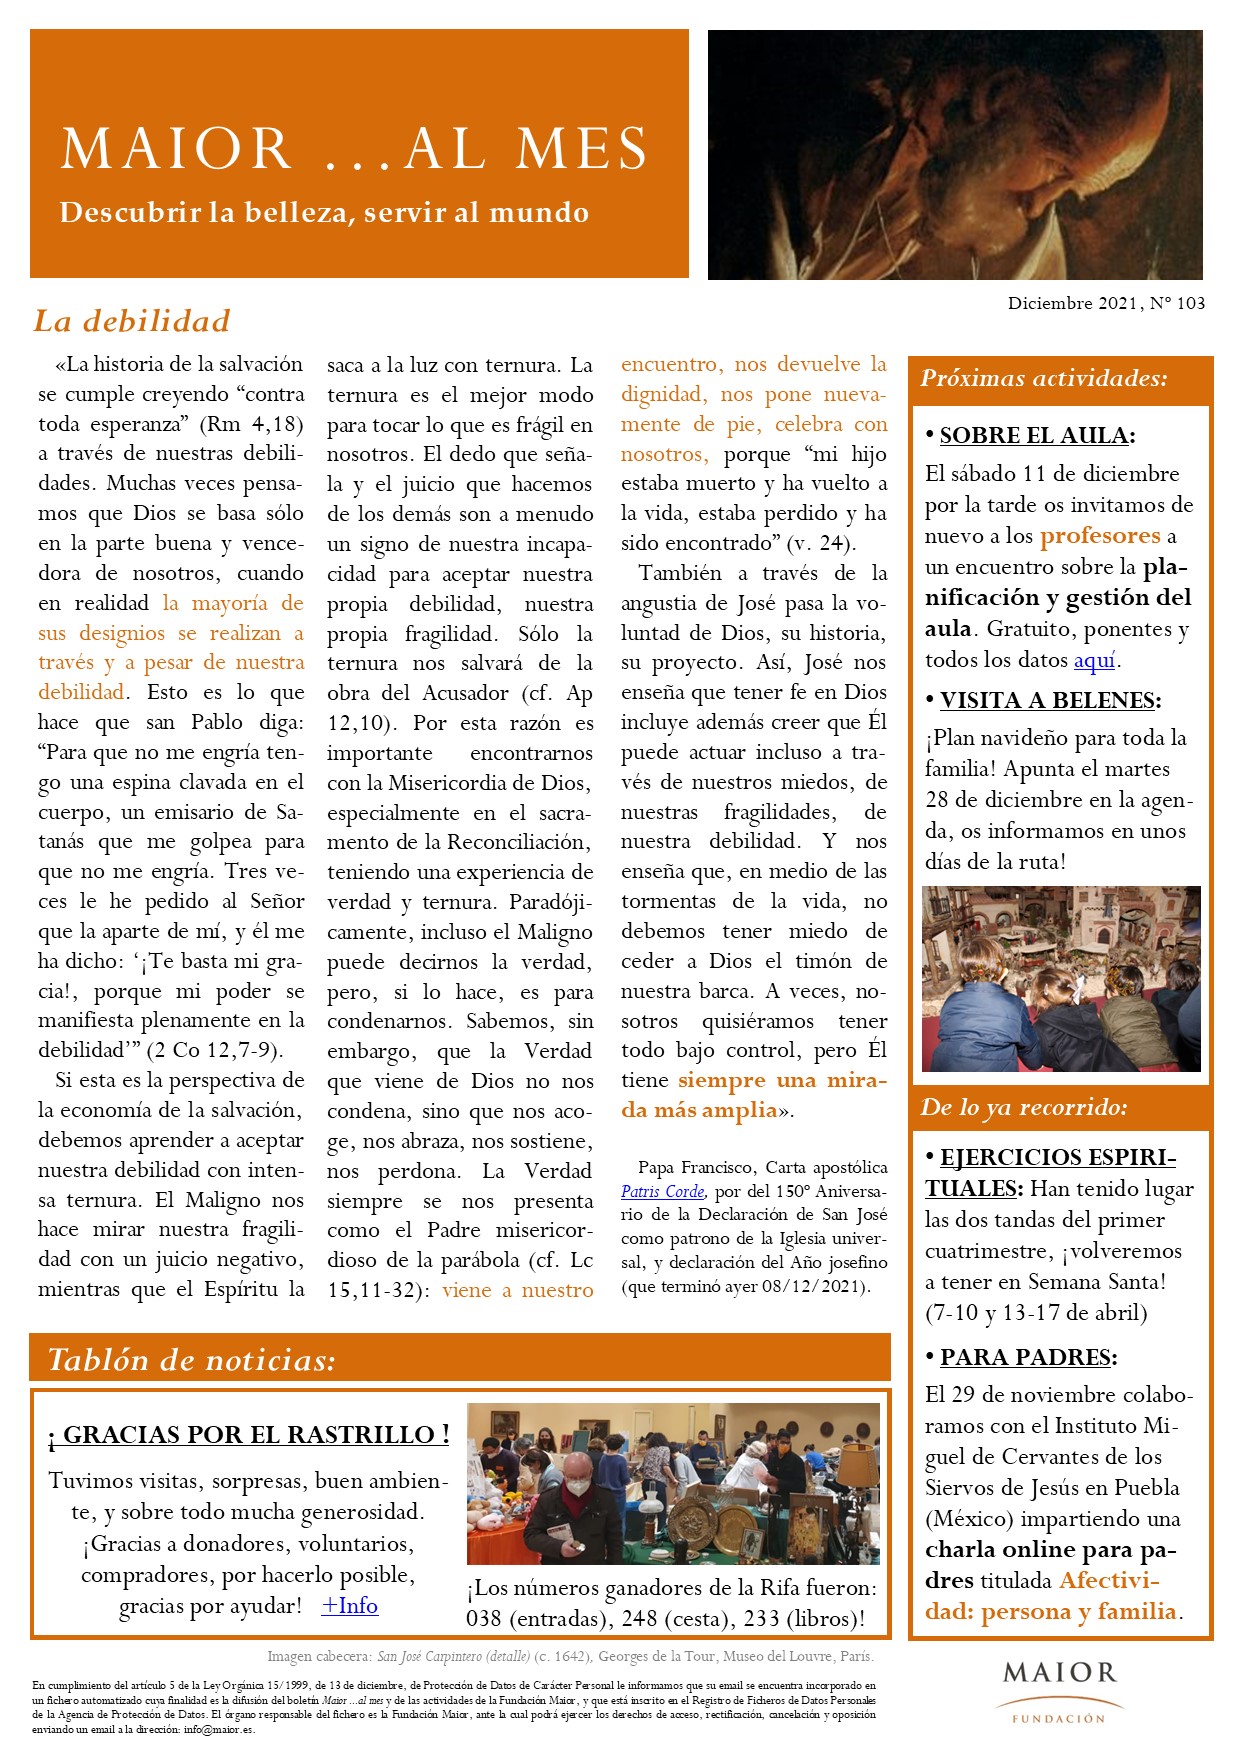 Boletín mensual de noticias y actividades de la Fundación Maior. Edición de diciembre 2021